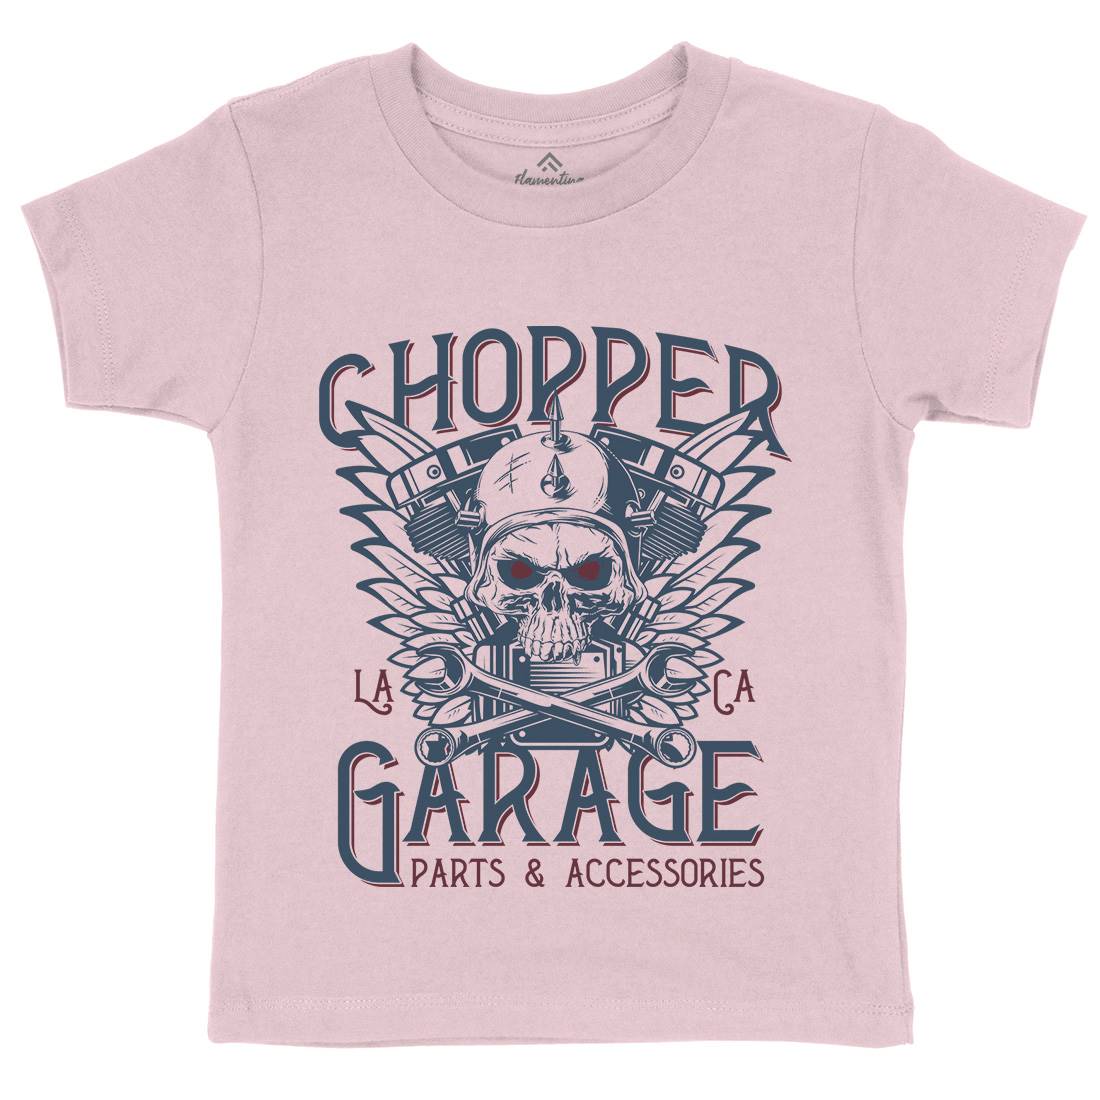 Chopper Garage Kids Crew Neck T-Shirt Motorcycles D918